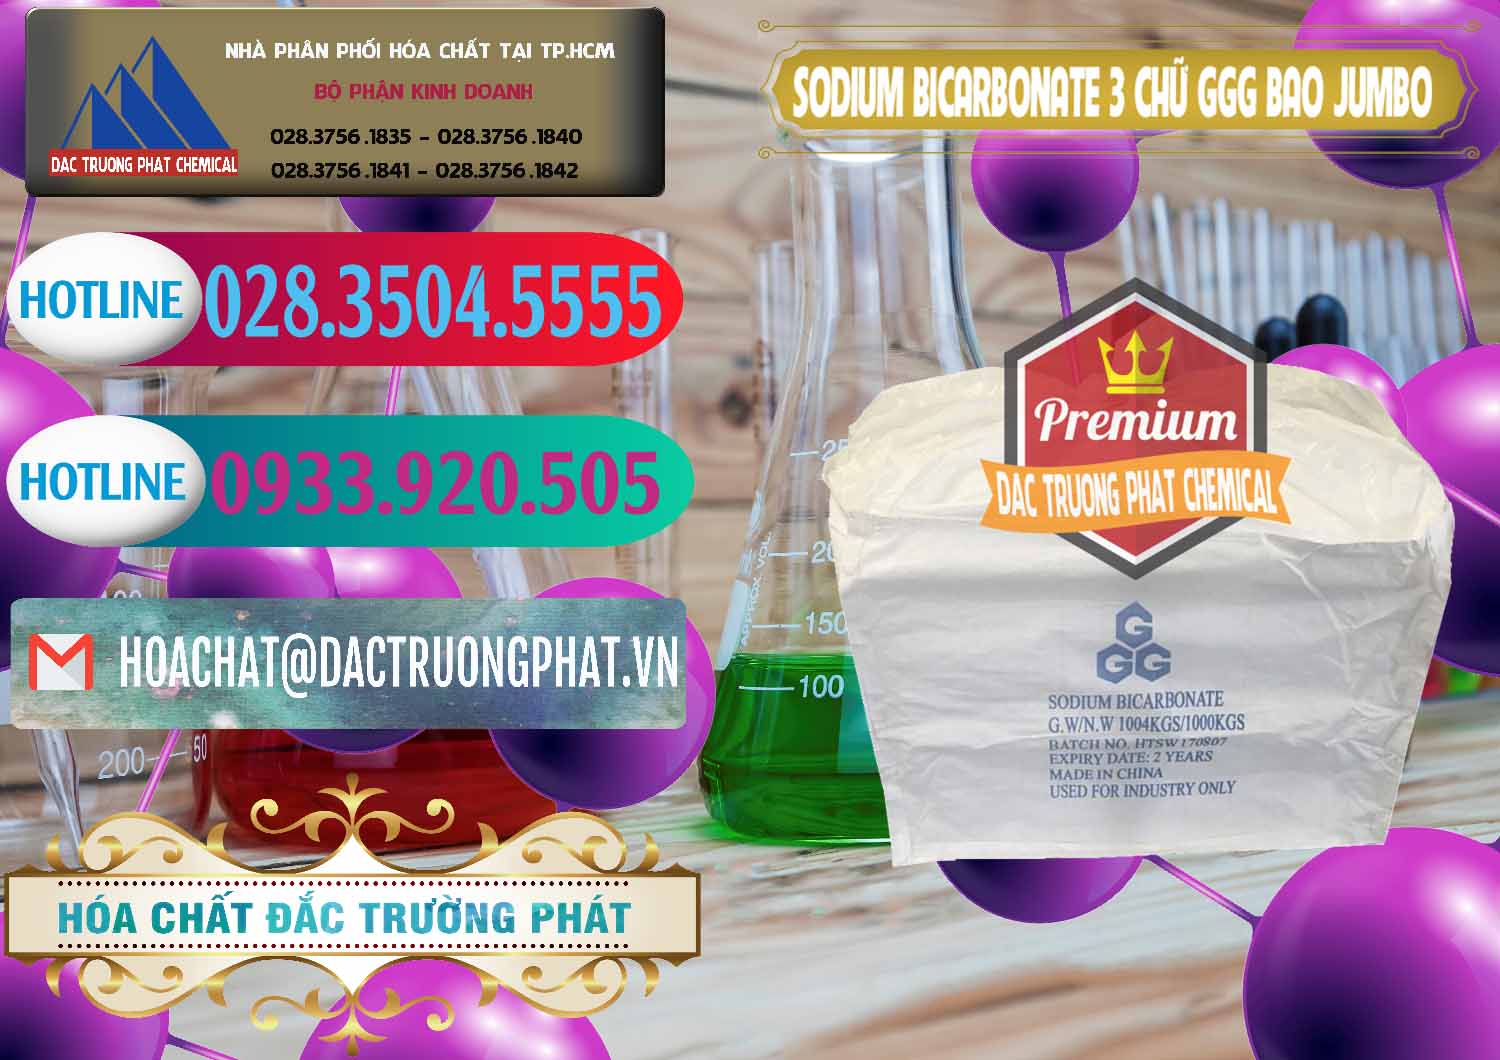 Cty chuyên cung cấp _ bán Sodium Bicarbonate – Bicar NaHCO3 Food Grade 3 Chữ GGG Bao Jumbo ( Bành ) Trung Quốc China - 0260 - Chuyên nhập khẩu ( phân phối ) hóa chất tại TP.HCM - truongphat.vn